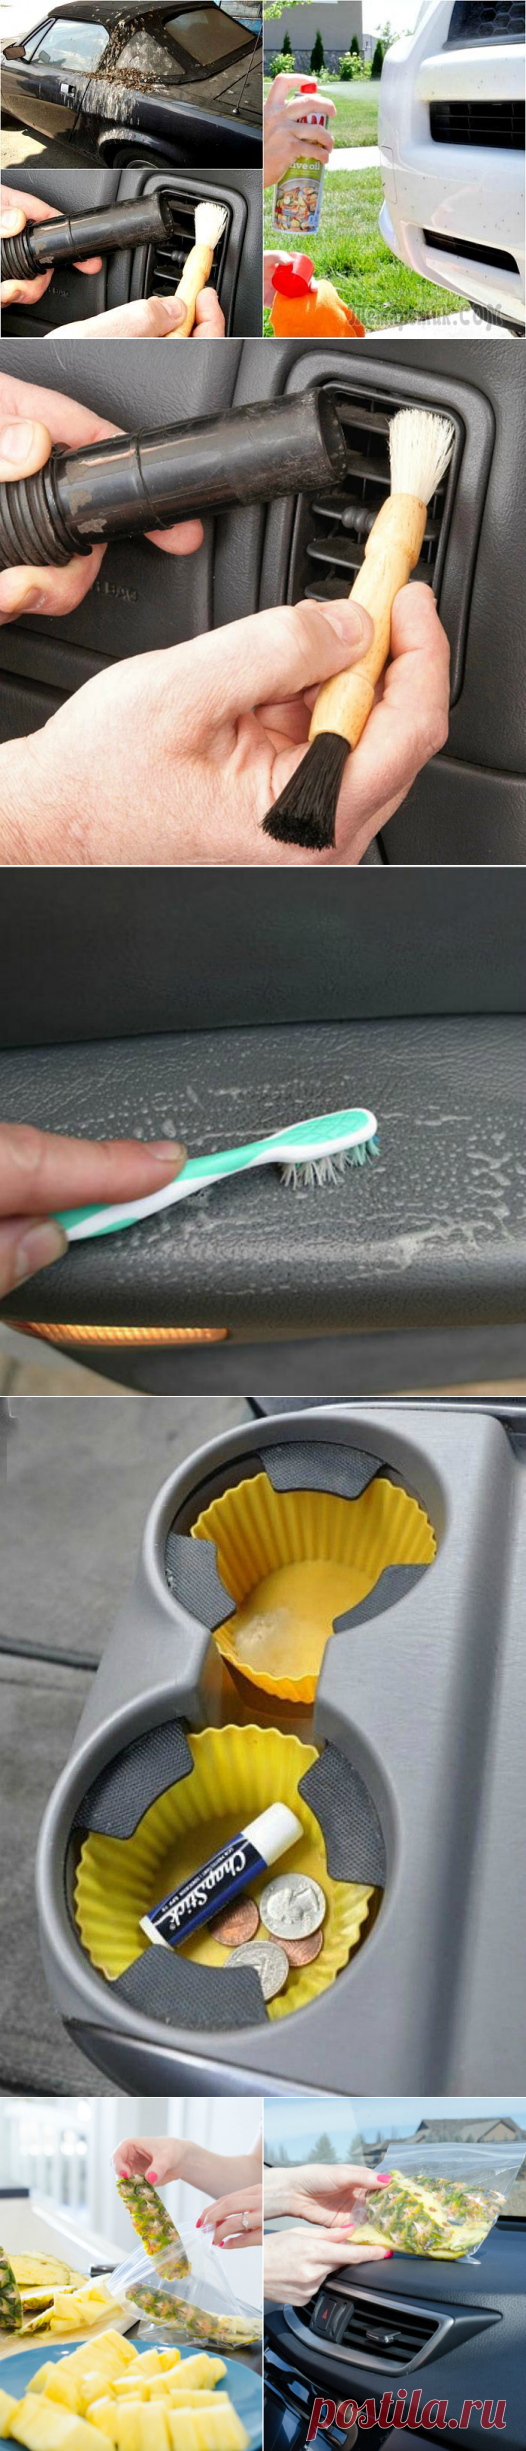 15 полезных советов, которые помогут «почистить перышки» собственному авто